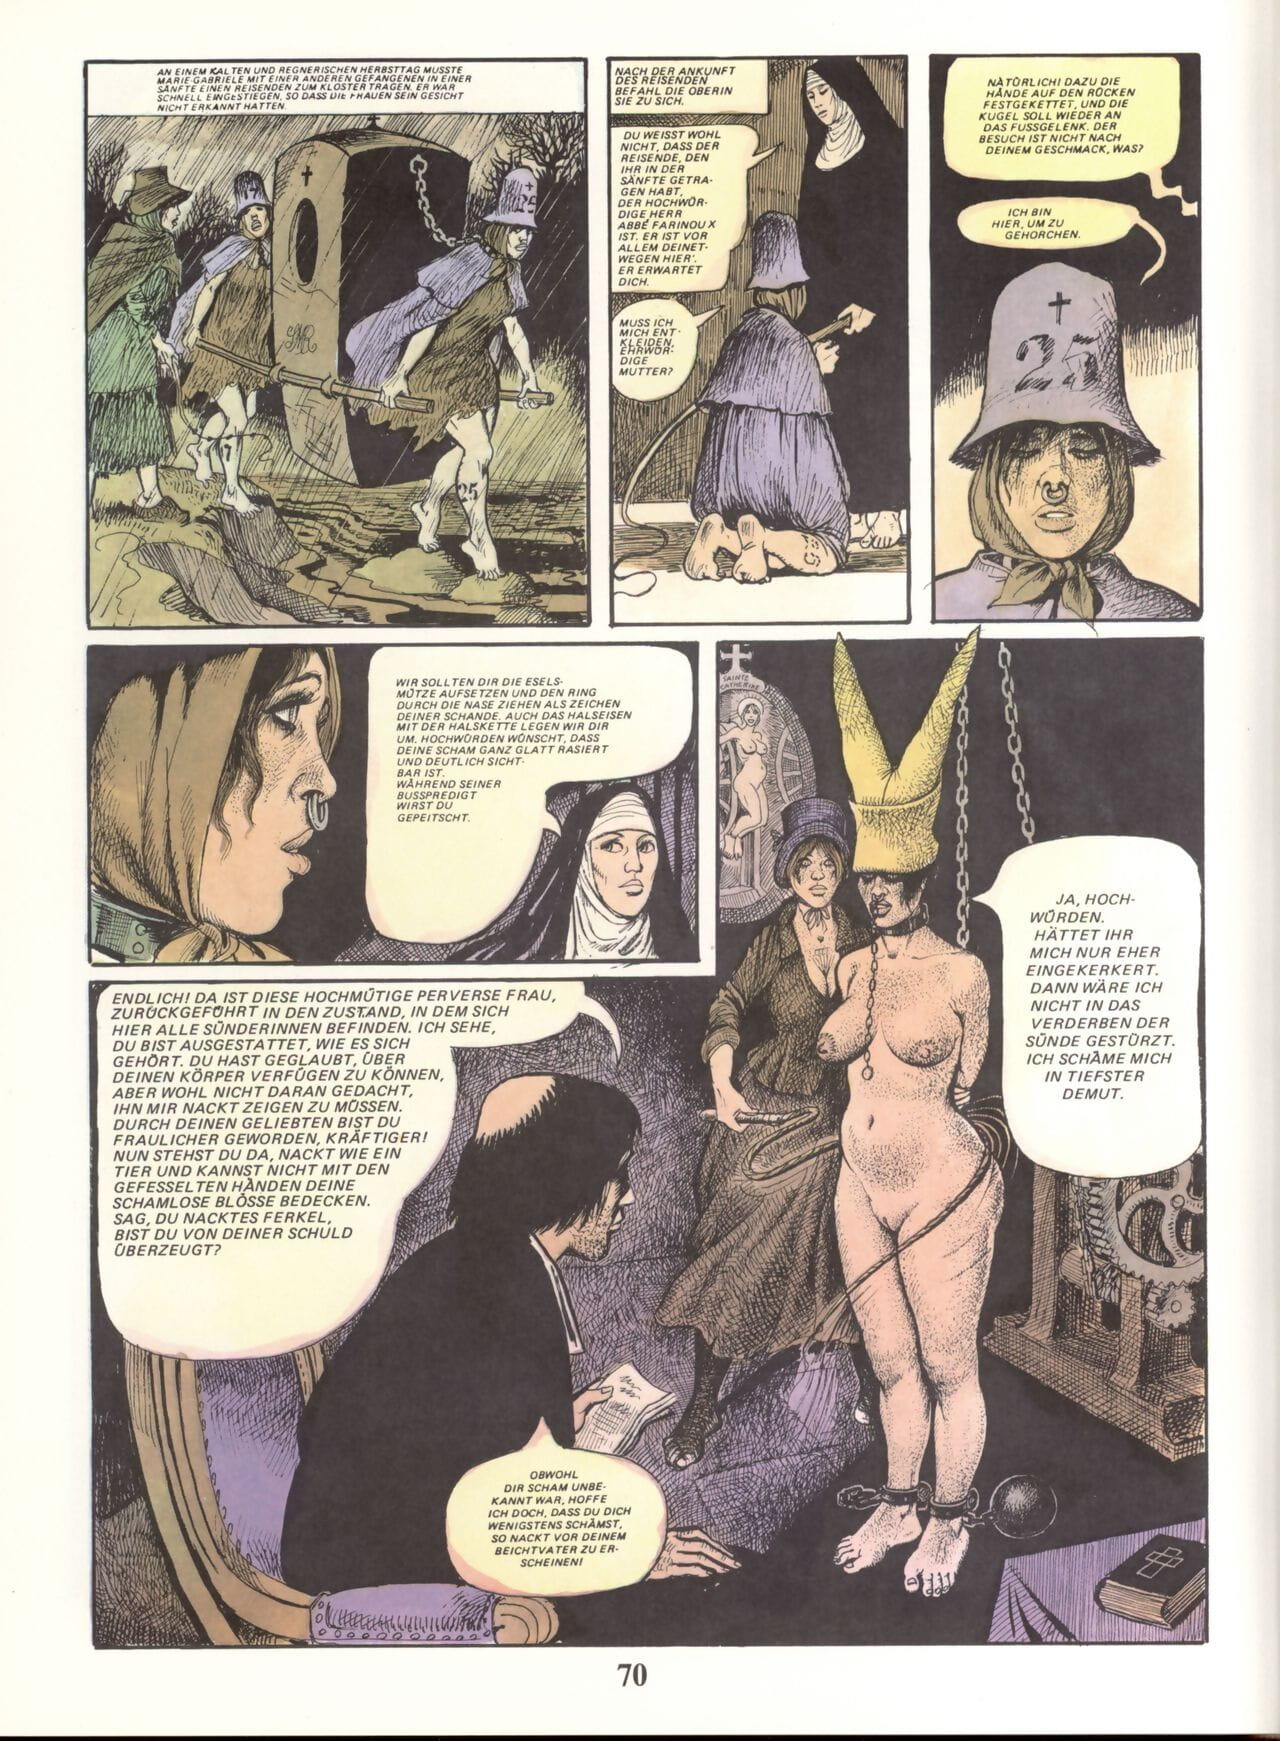 Marie Gabrielle De San eutropo #02 parte 5 page 1